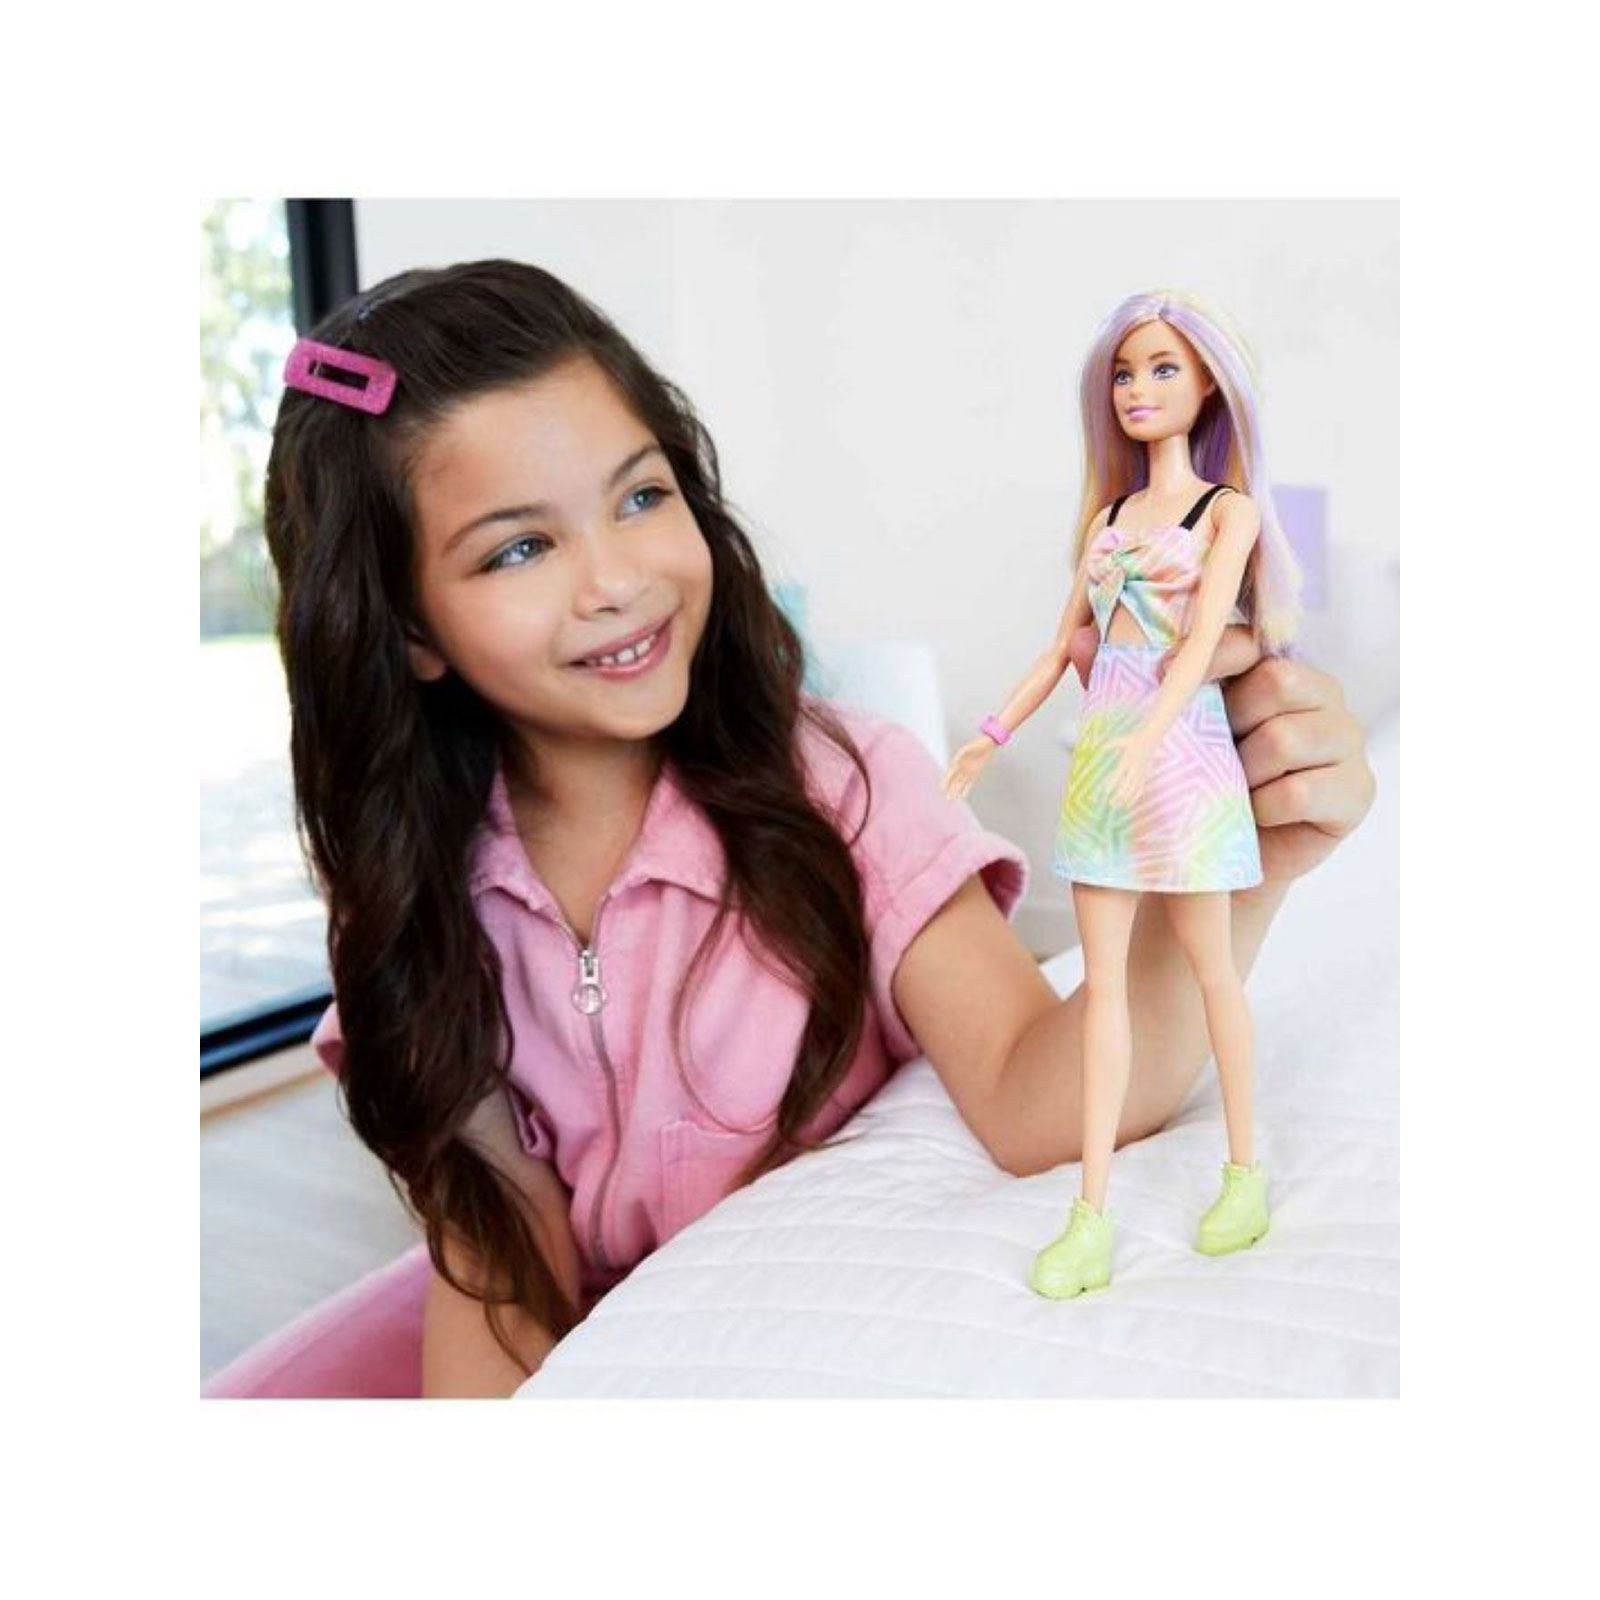 Barbie Fashionistas Büyüleyici Parti Bebekleri Karışık Renkli